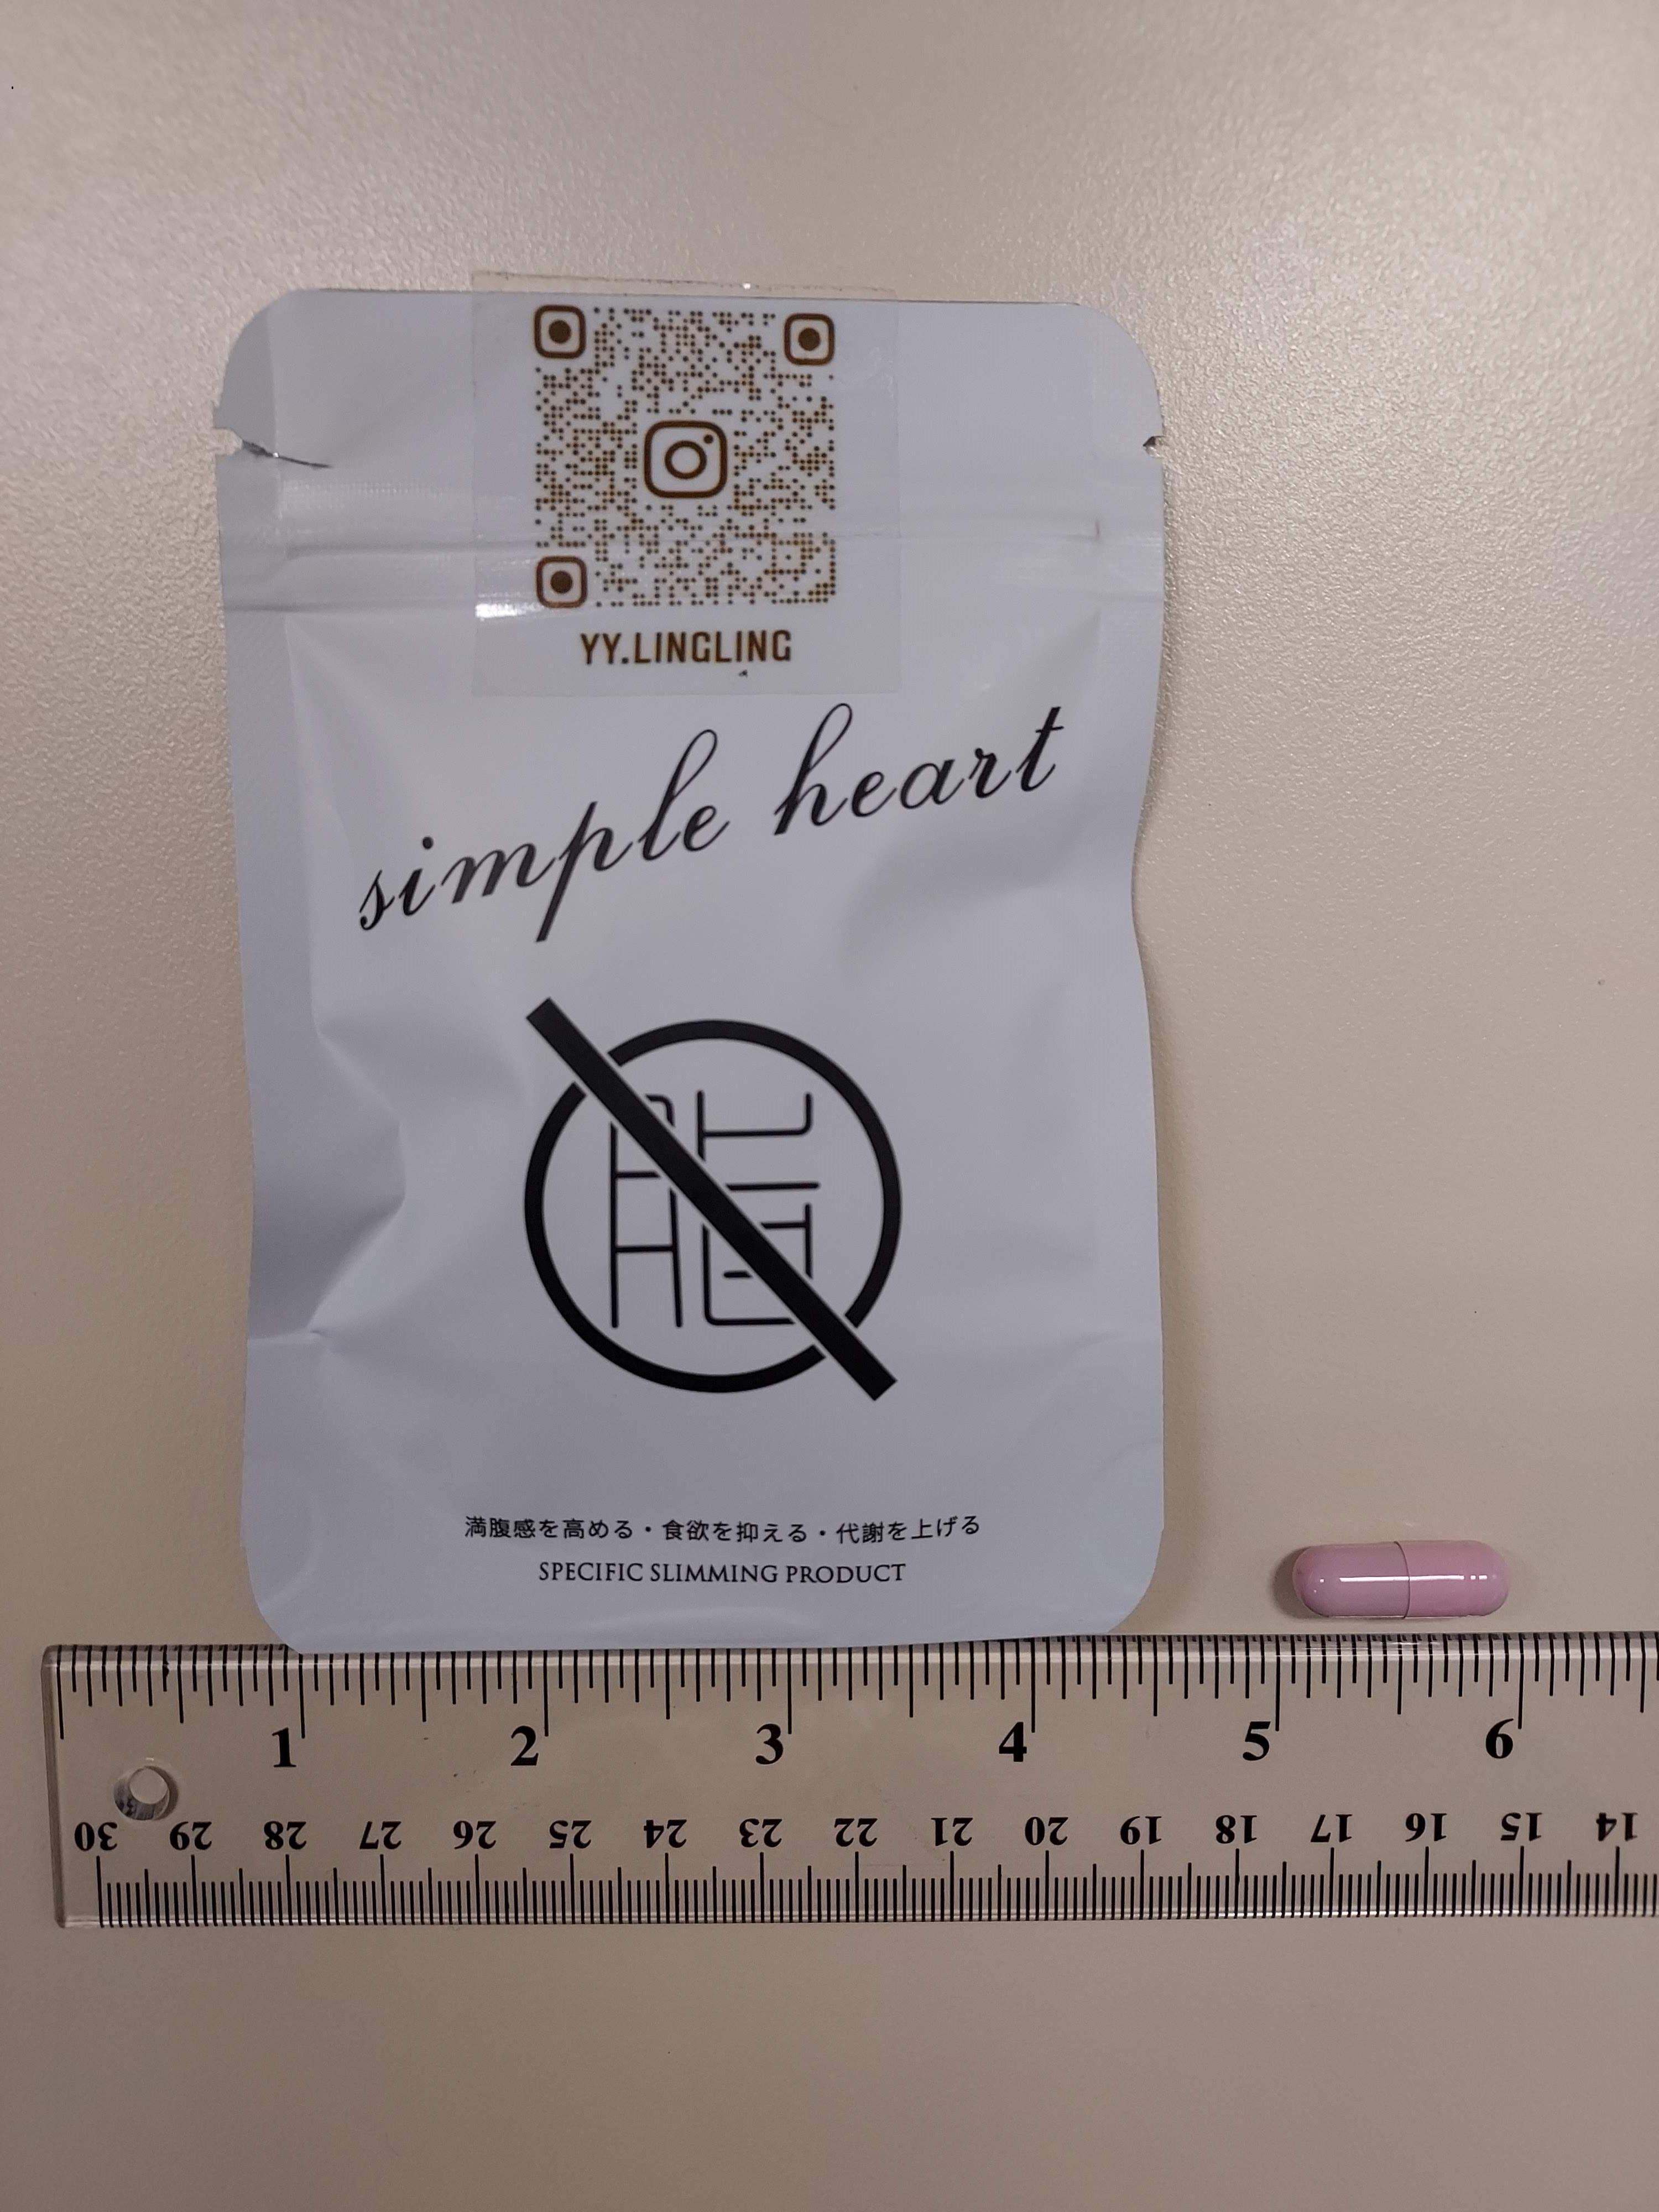 卫生署今日（十二月八日）呼吁市民切勿购买或服用一款名为「simple heart SPECIFIC SLIMMING PRODUCT」的减肥产品，因为该款产品被发现含有未标示受管制及已禁用药物成分。图为上述产品。